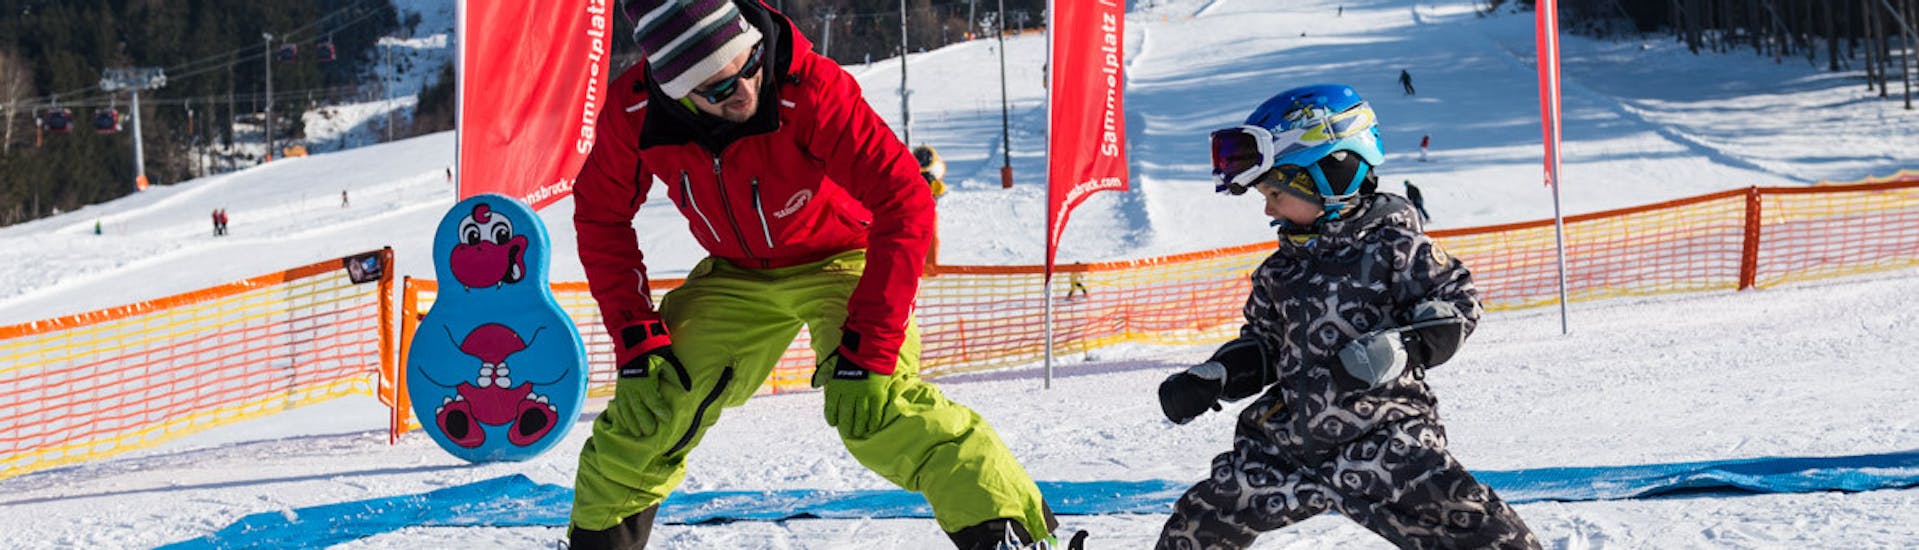 Privater Skikurs für Kinder mit Erfahrung mit Ski- & Snowboardschule Innsbruck.